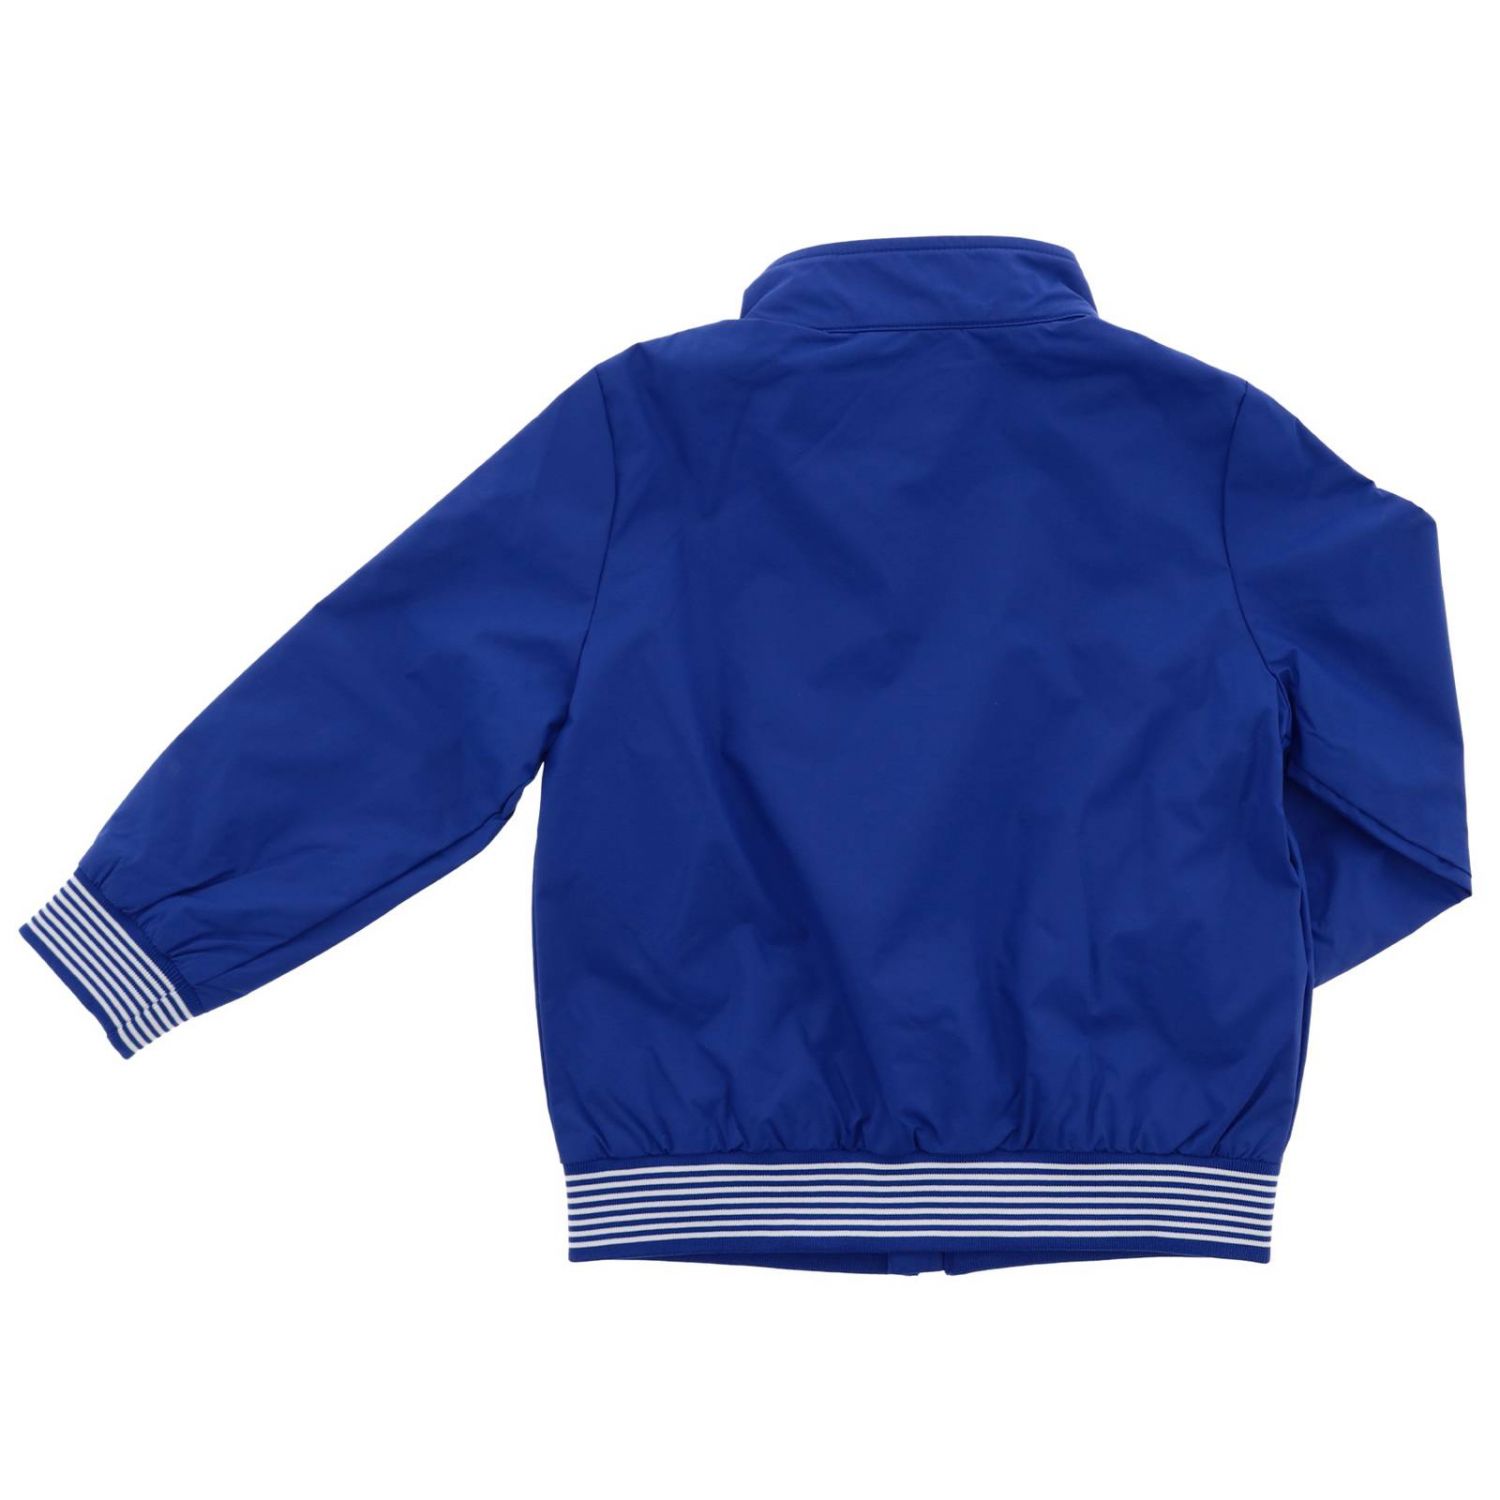 blue ea7 jacket